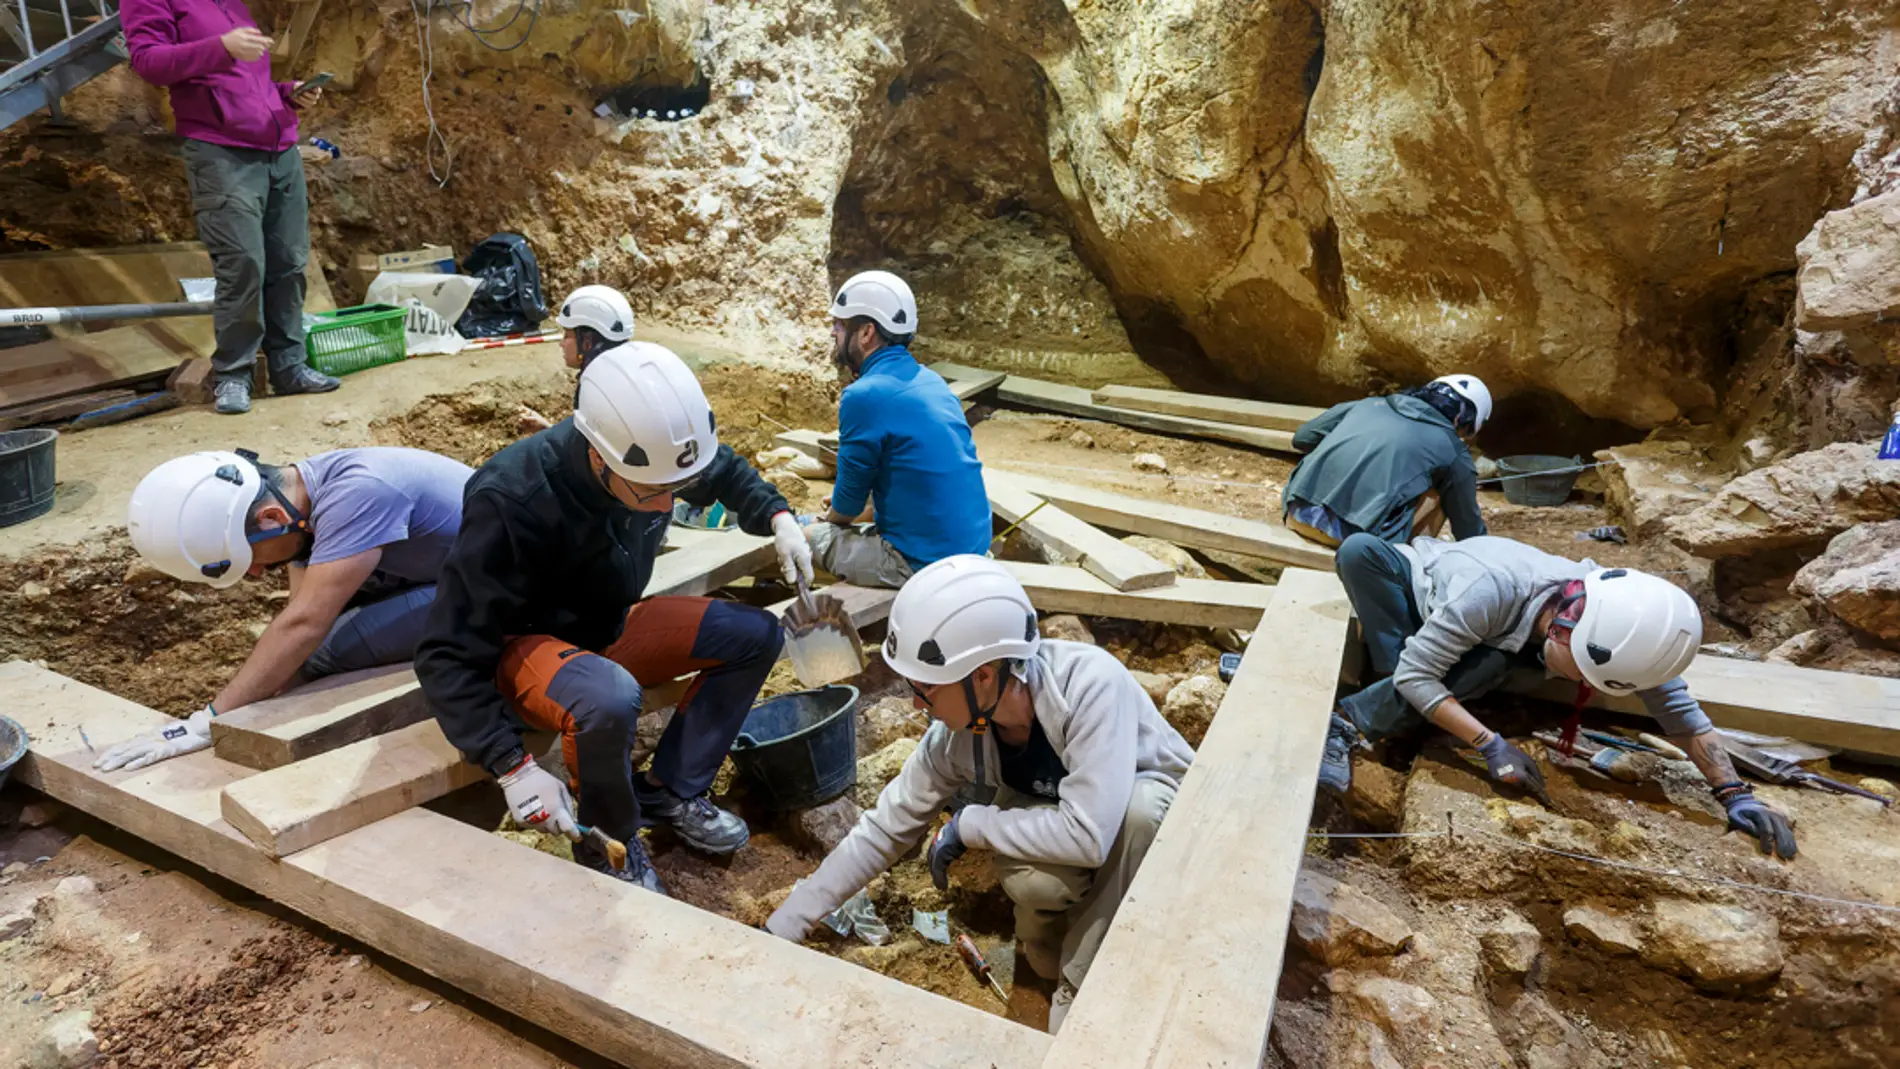 Hallada en Atapuerca "la cara del primer europeo"